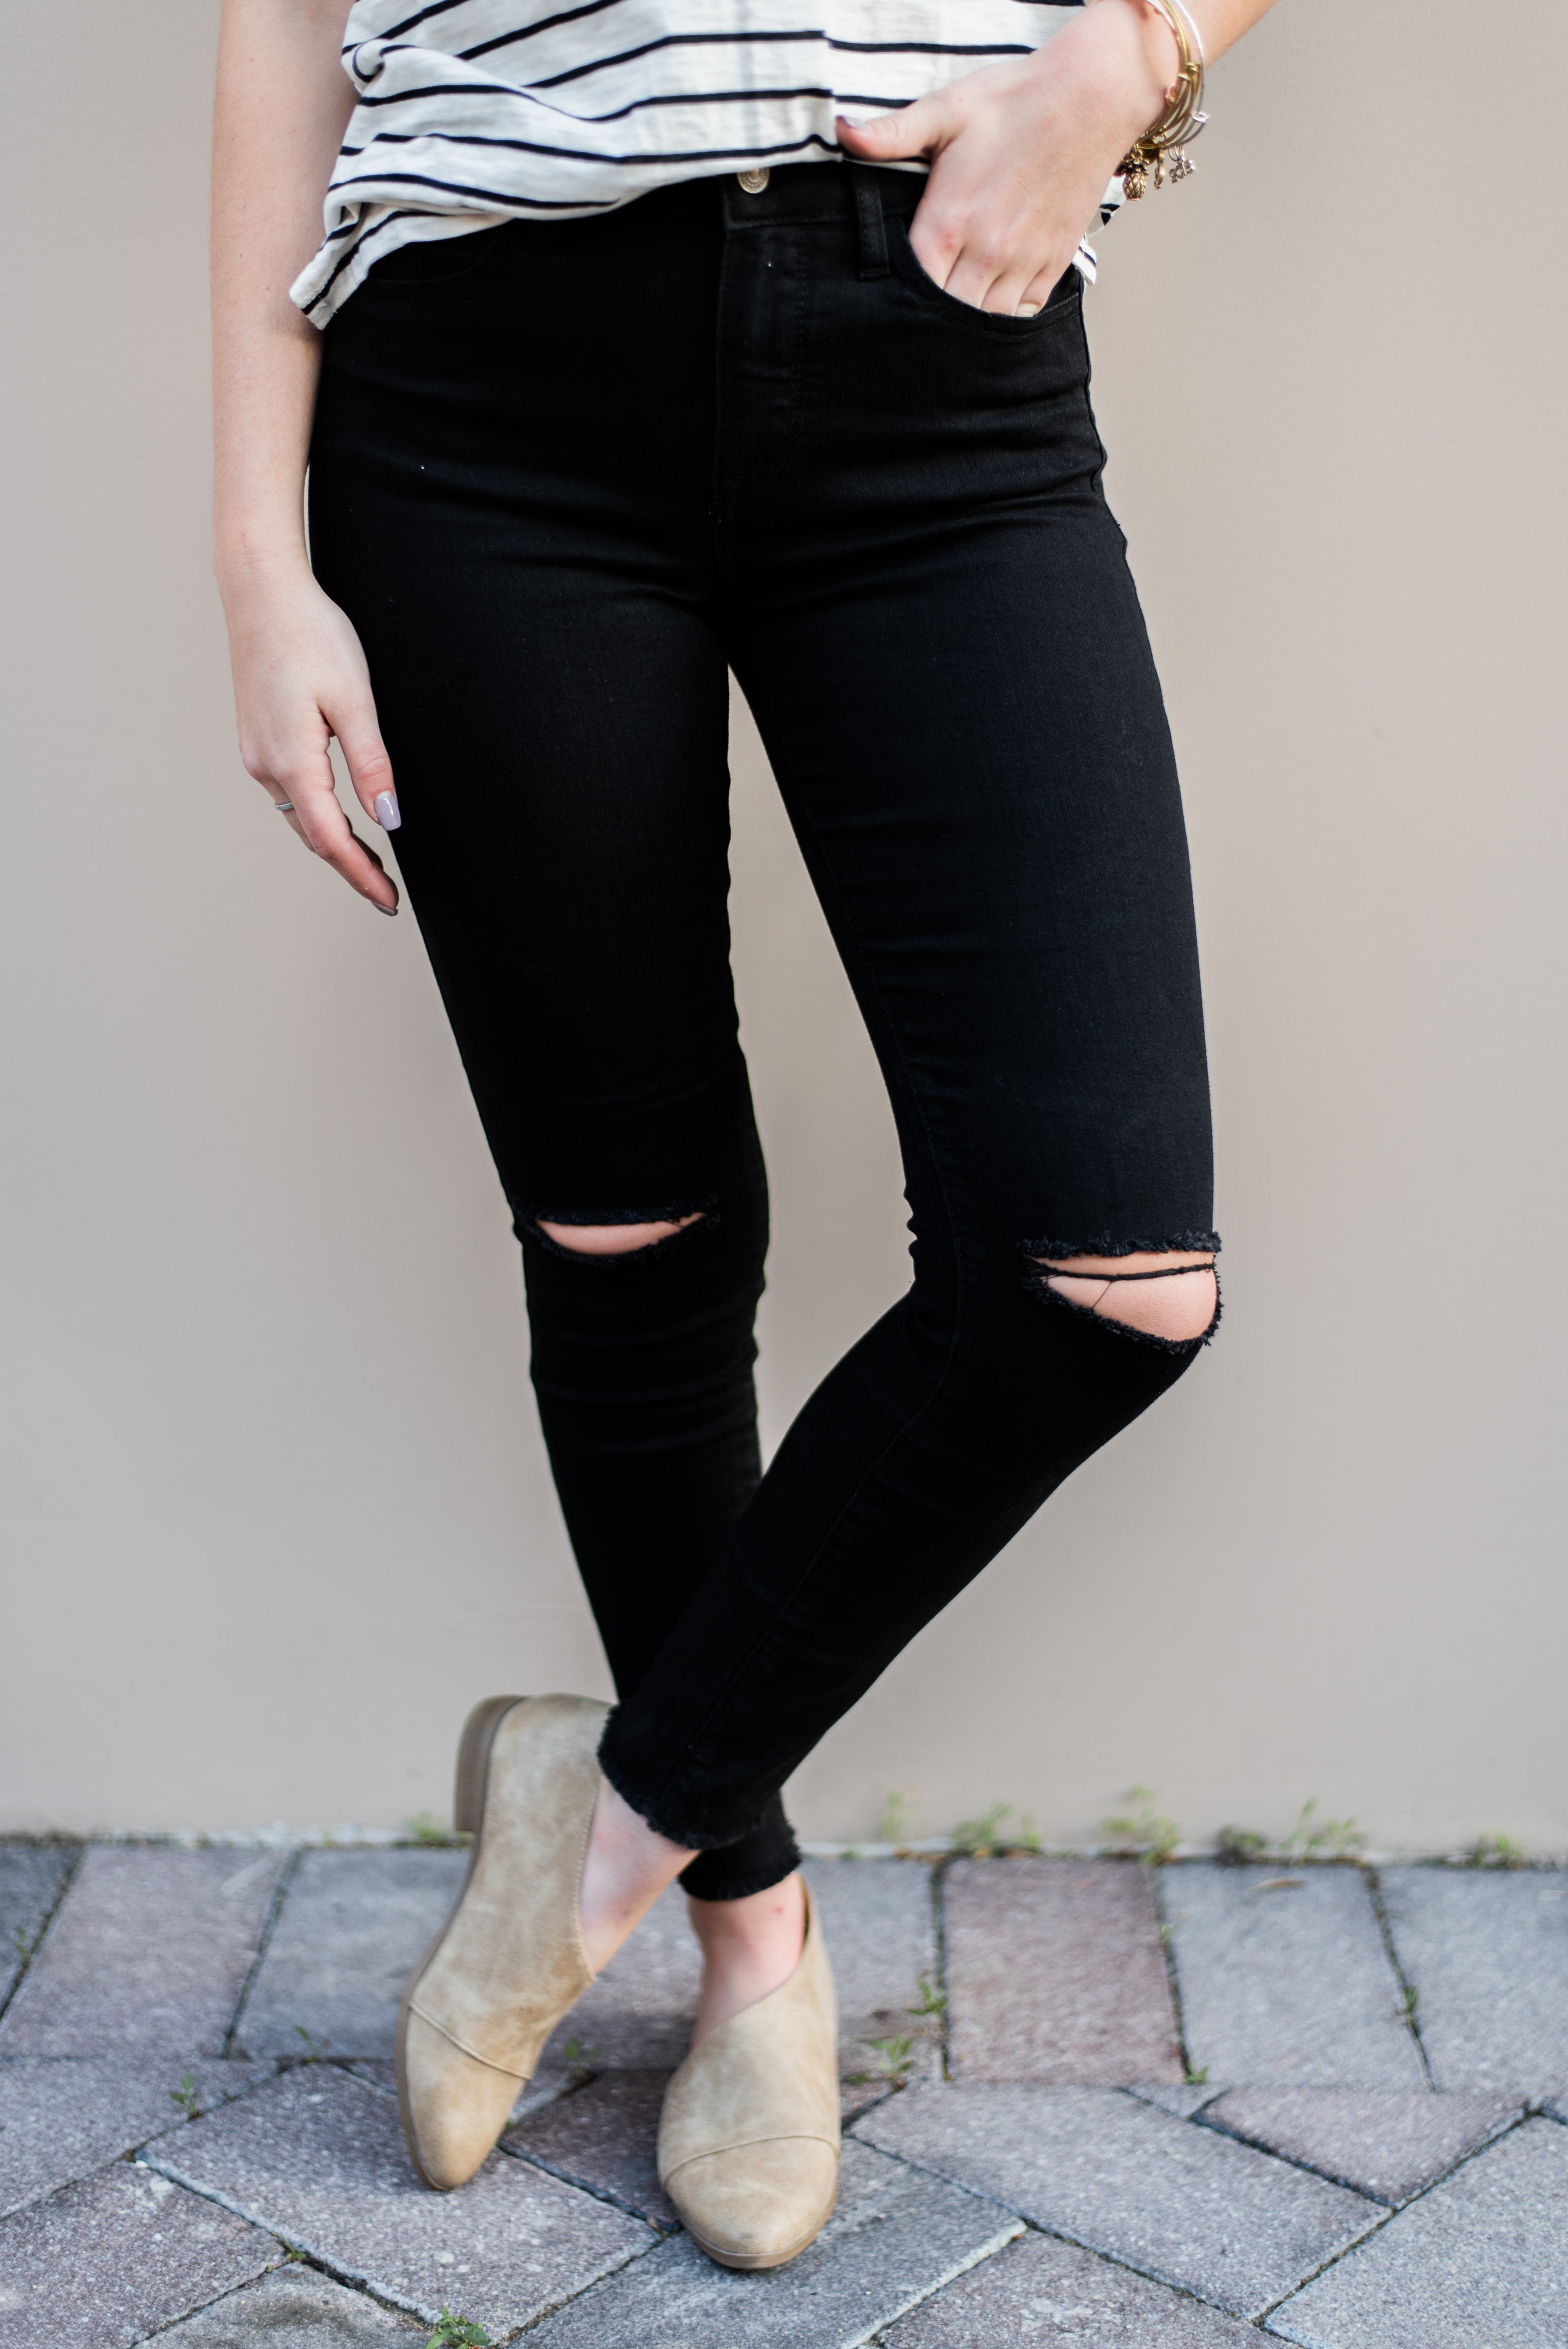 black slit jeans